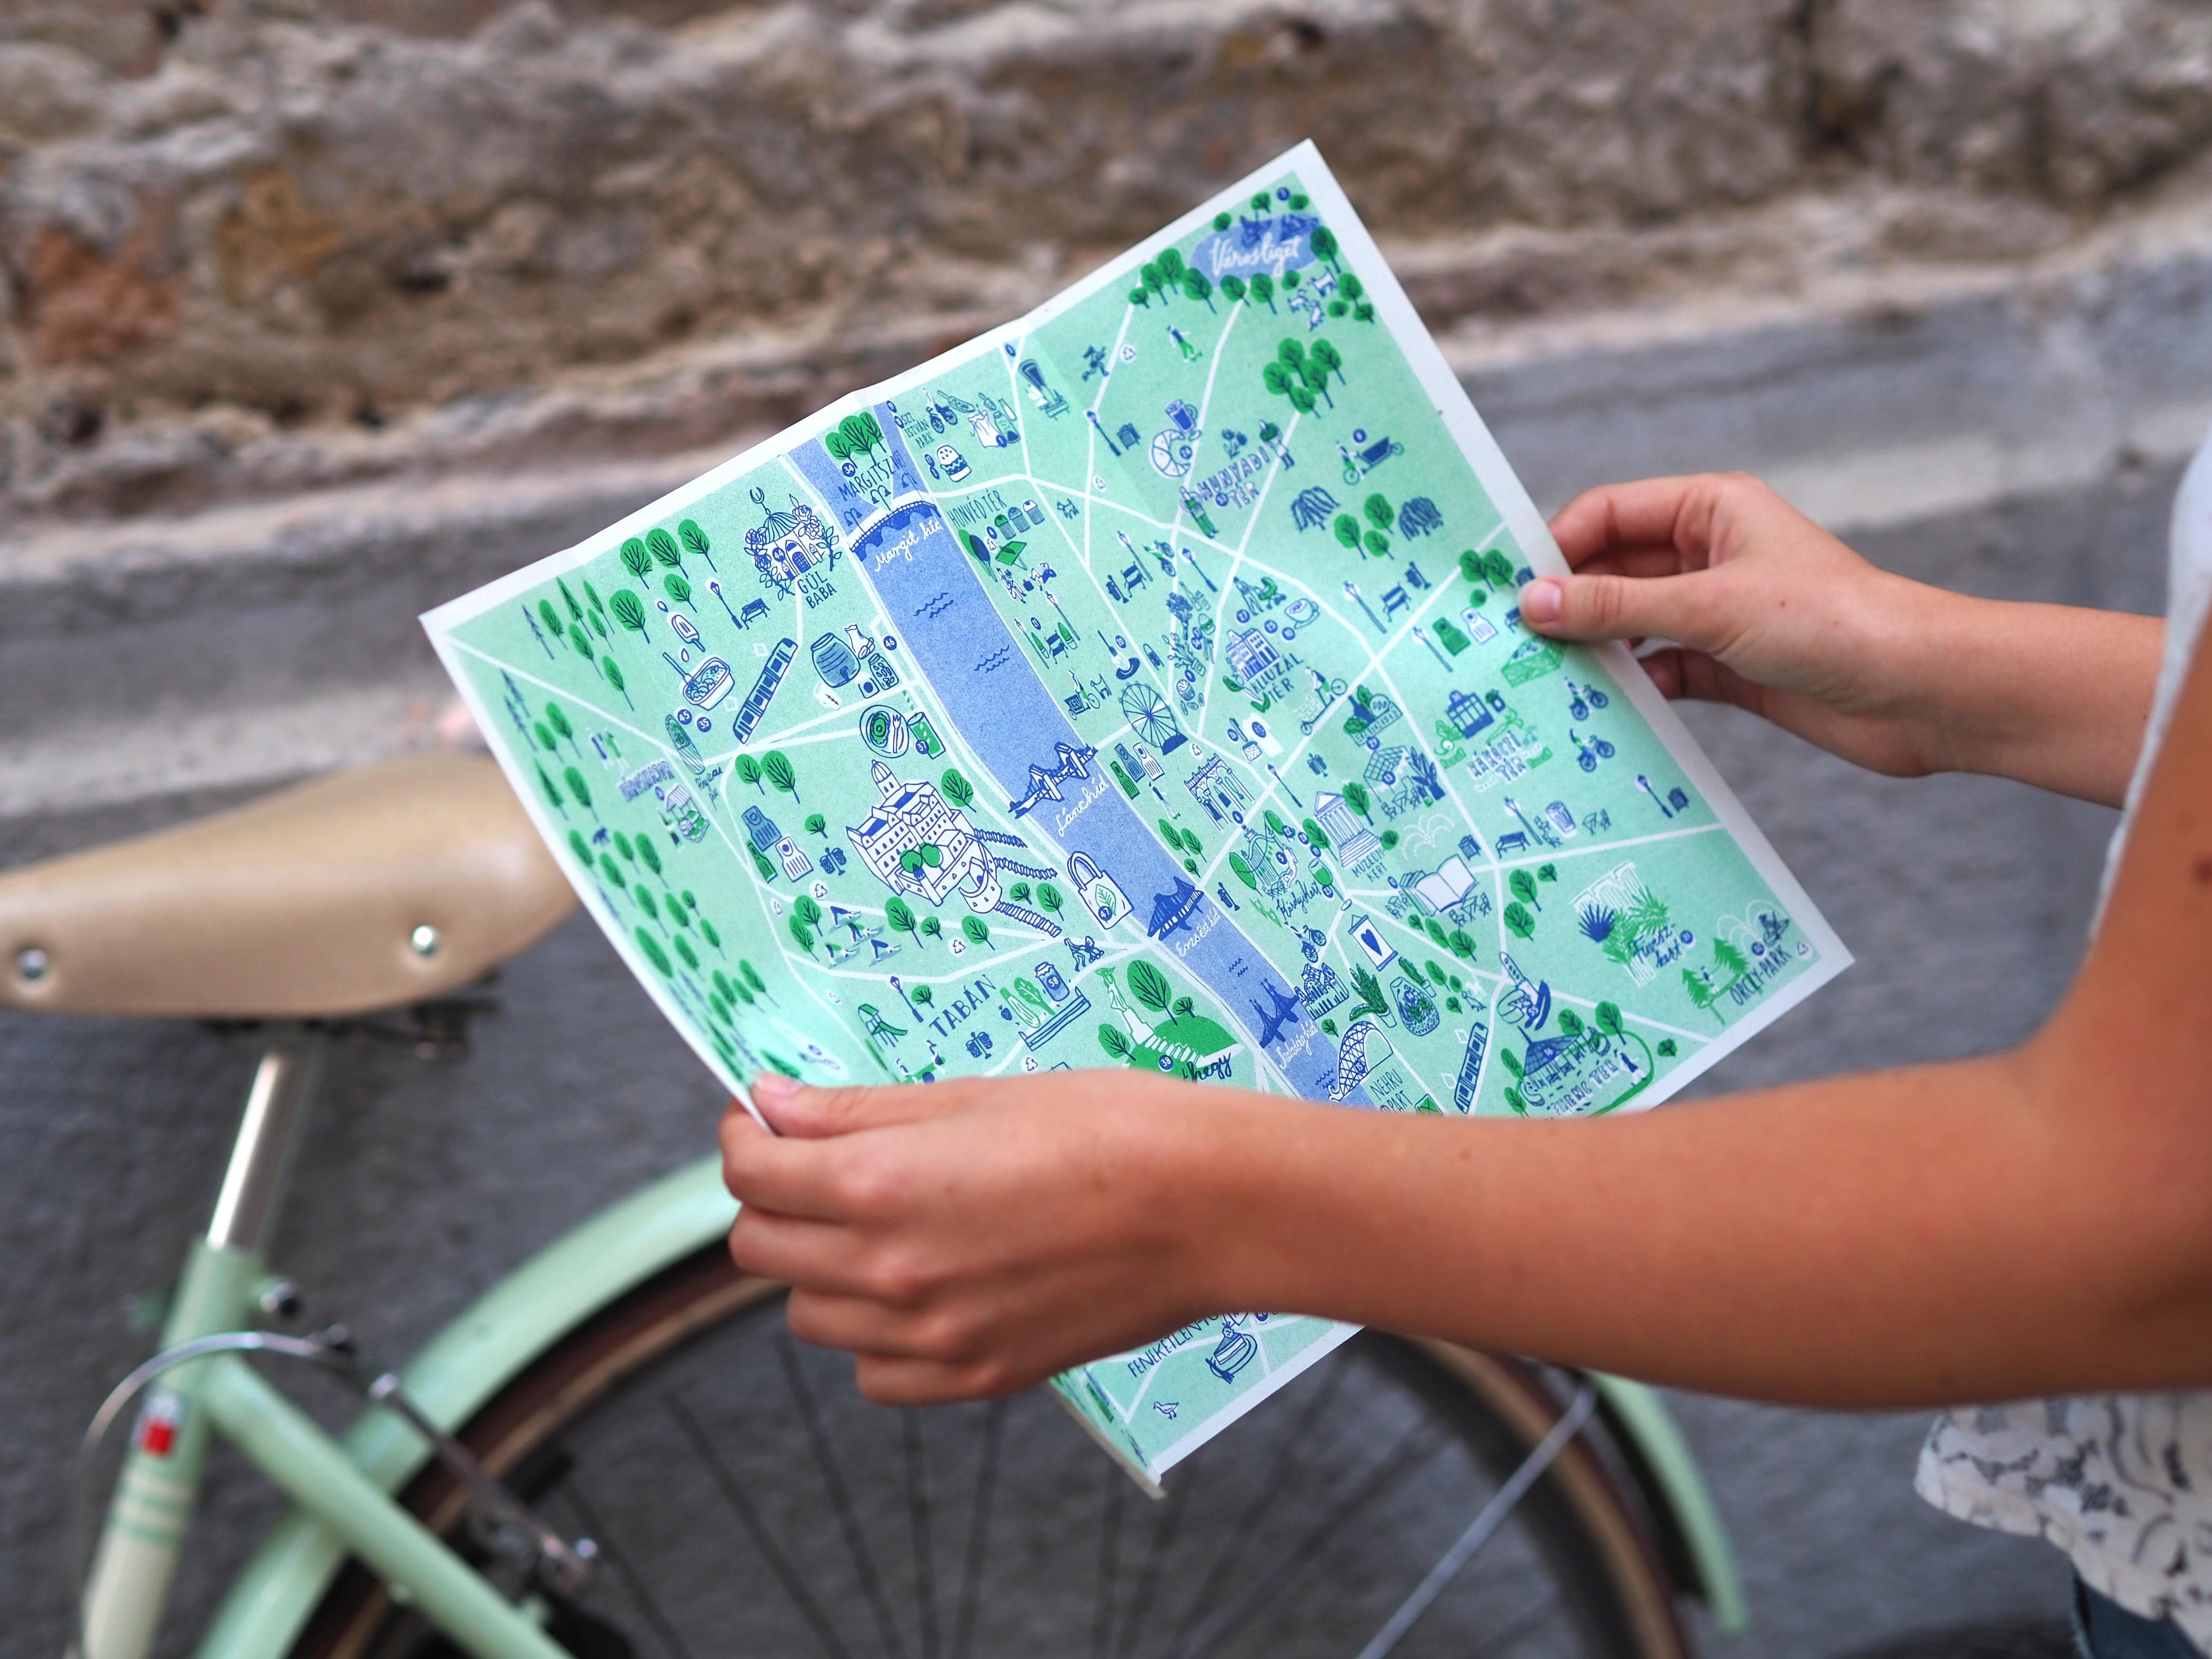 Green Guide Budapest néven ingyenes, szubjektív térkép jelent meg – zöld útmutató egy fenntarthatóbb városhoz